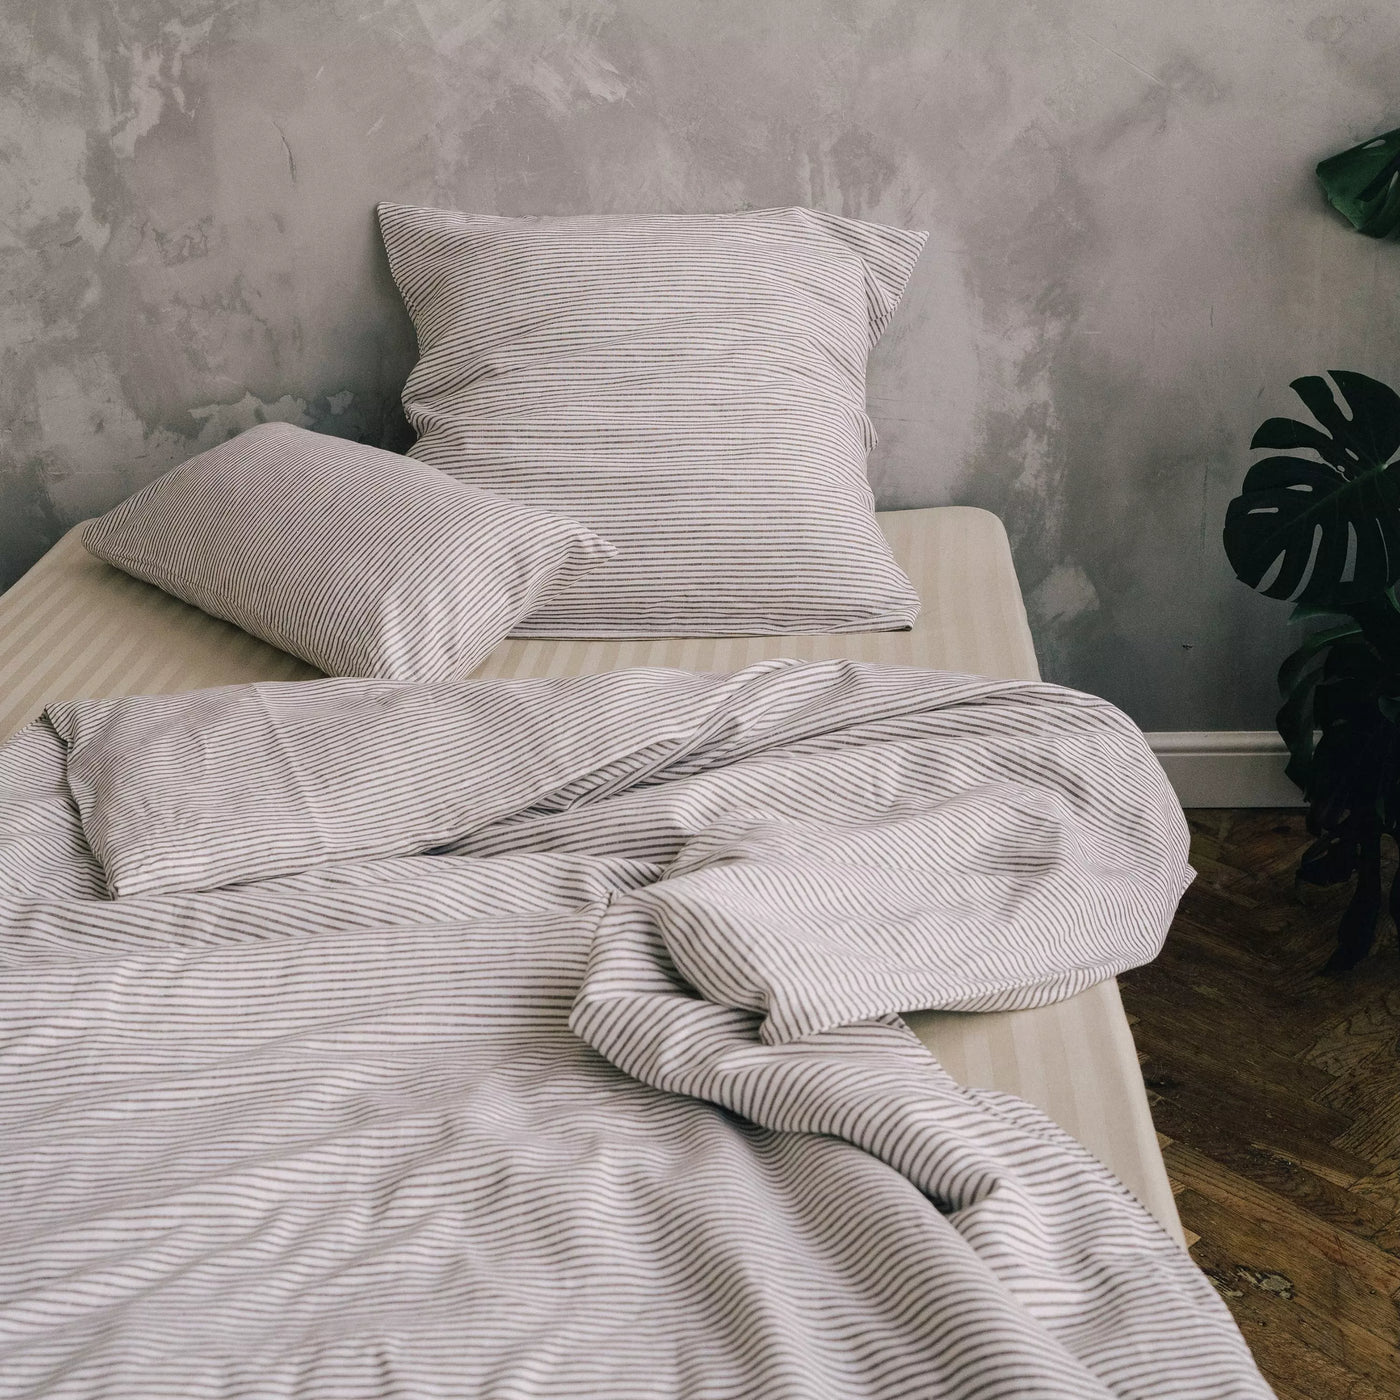 Acquista il set di biancheria da letto in puro lino 135x200 in bianco con strisce marroni 3